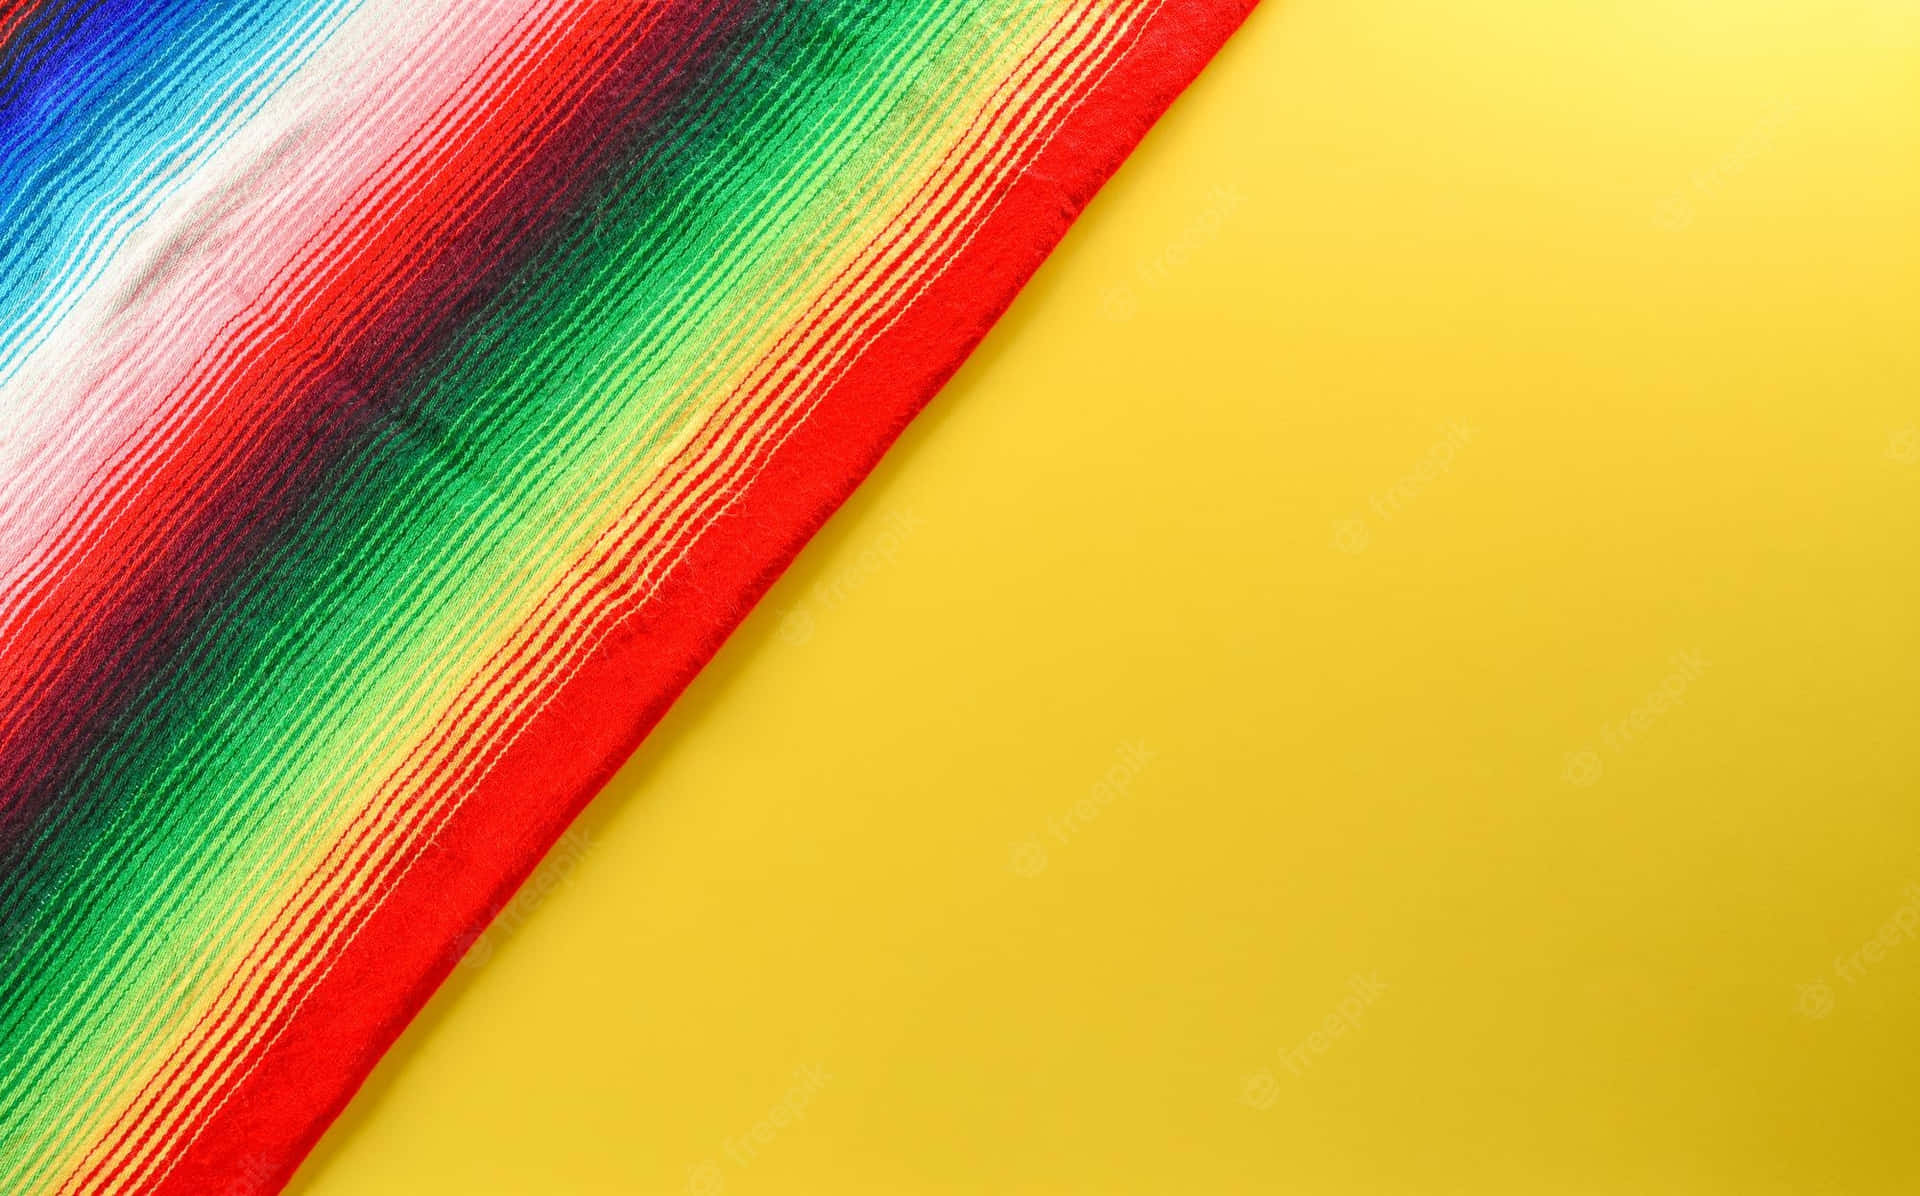 Rayasde Colores En Un Serape Amarillo Fondo de pantalla